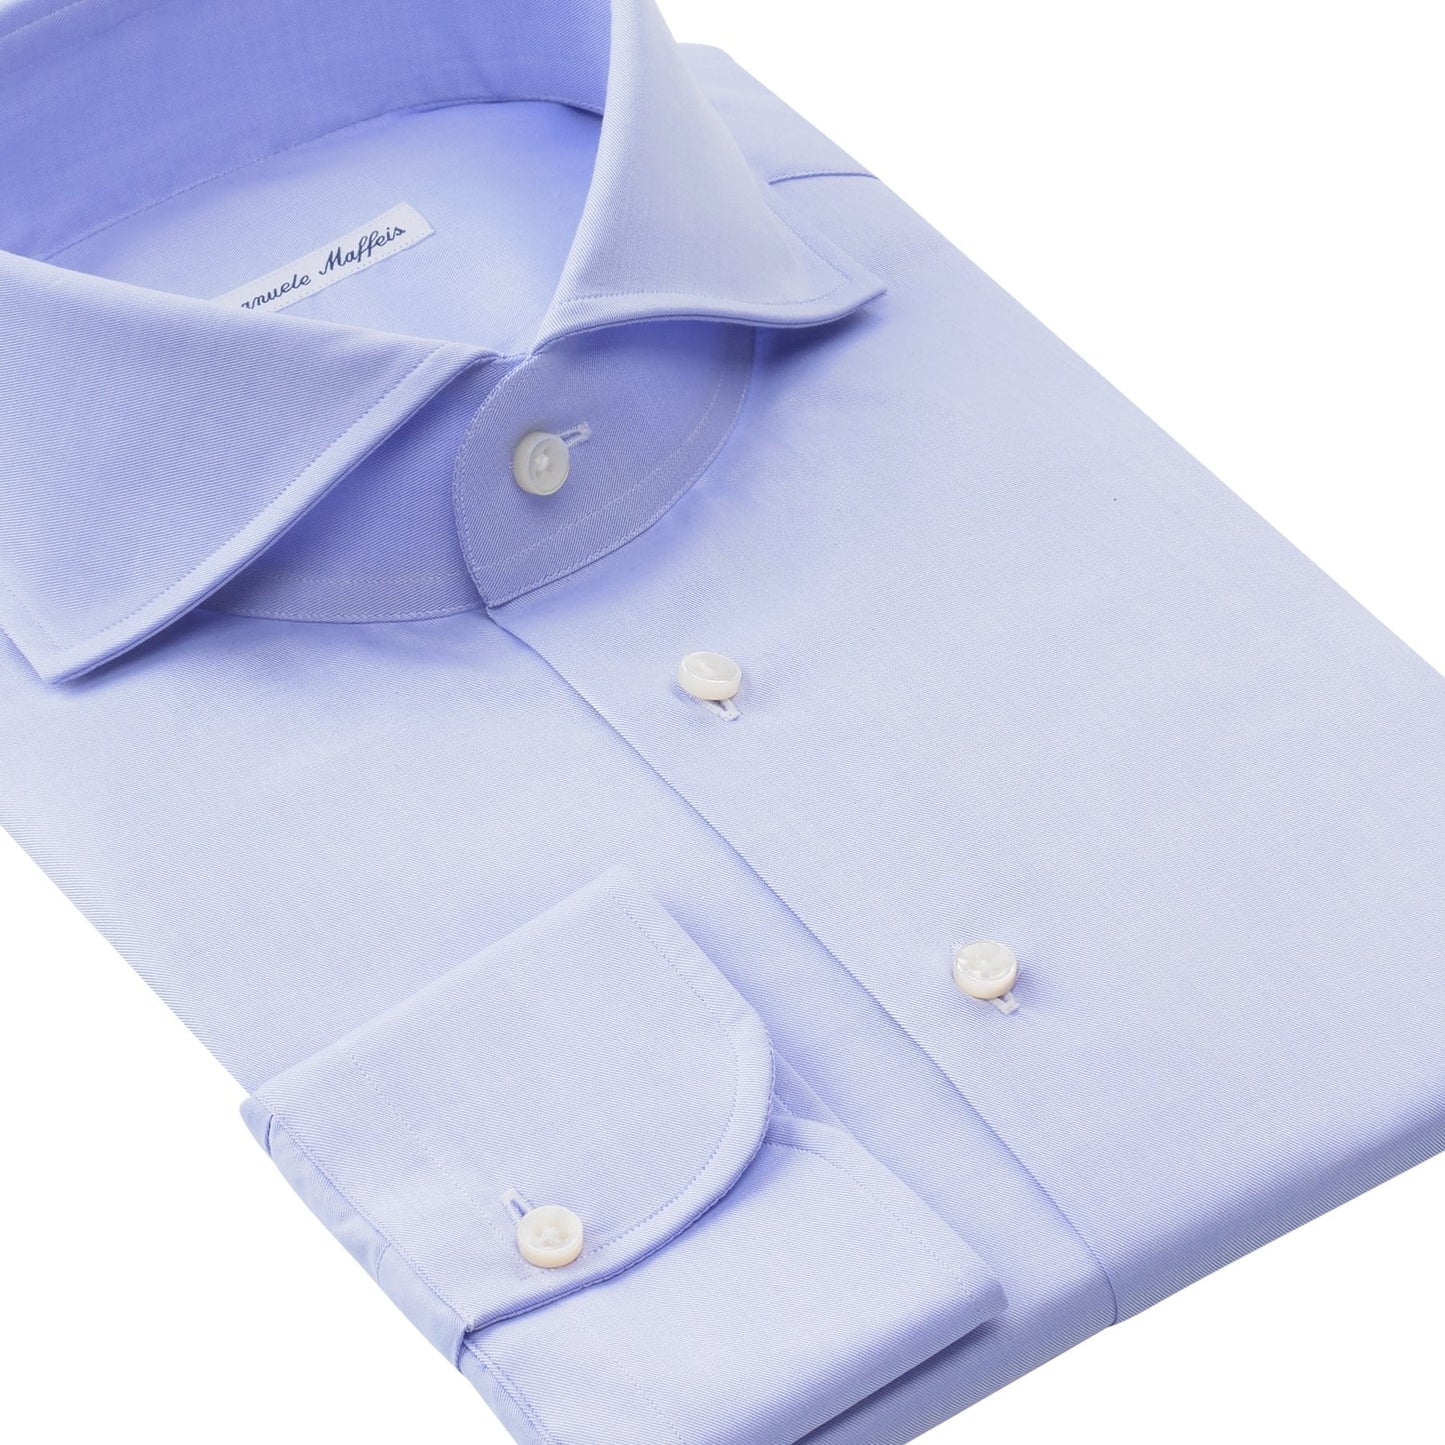 Emanuele Maffeis Finest Cotton Light Blue Shirt with Shark Collar - SARTALE